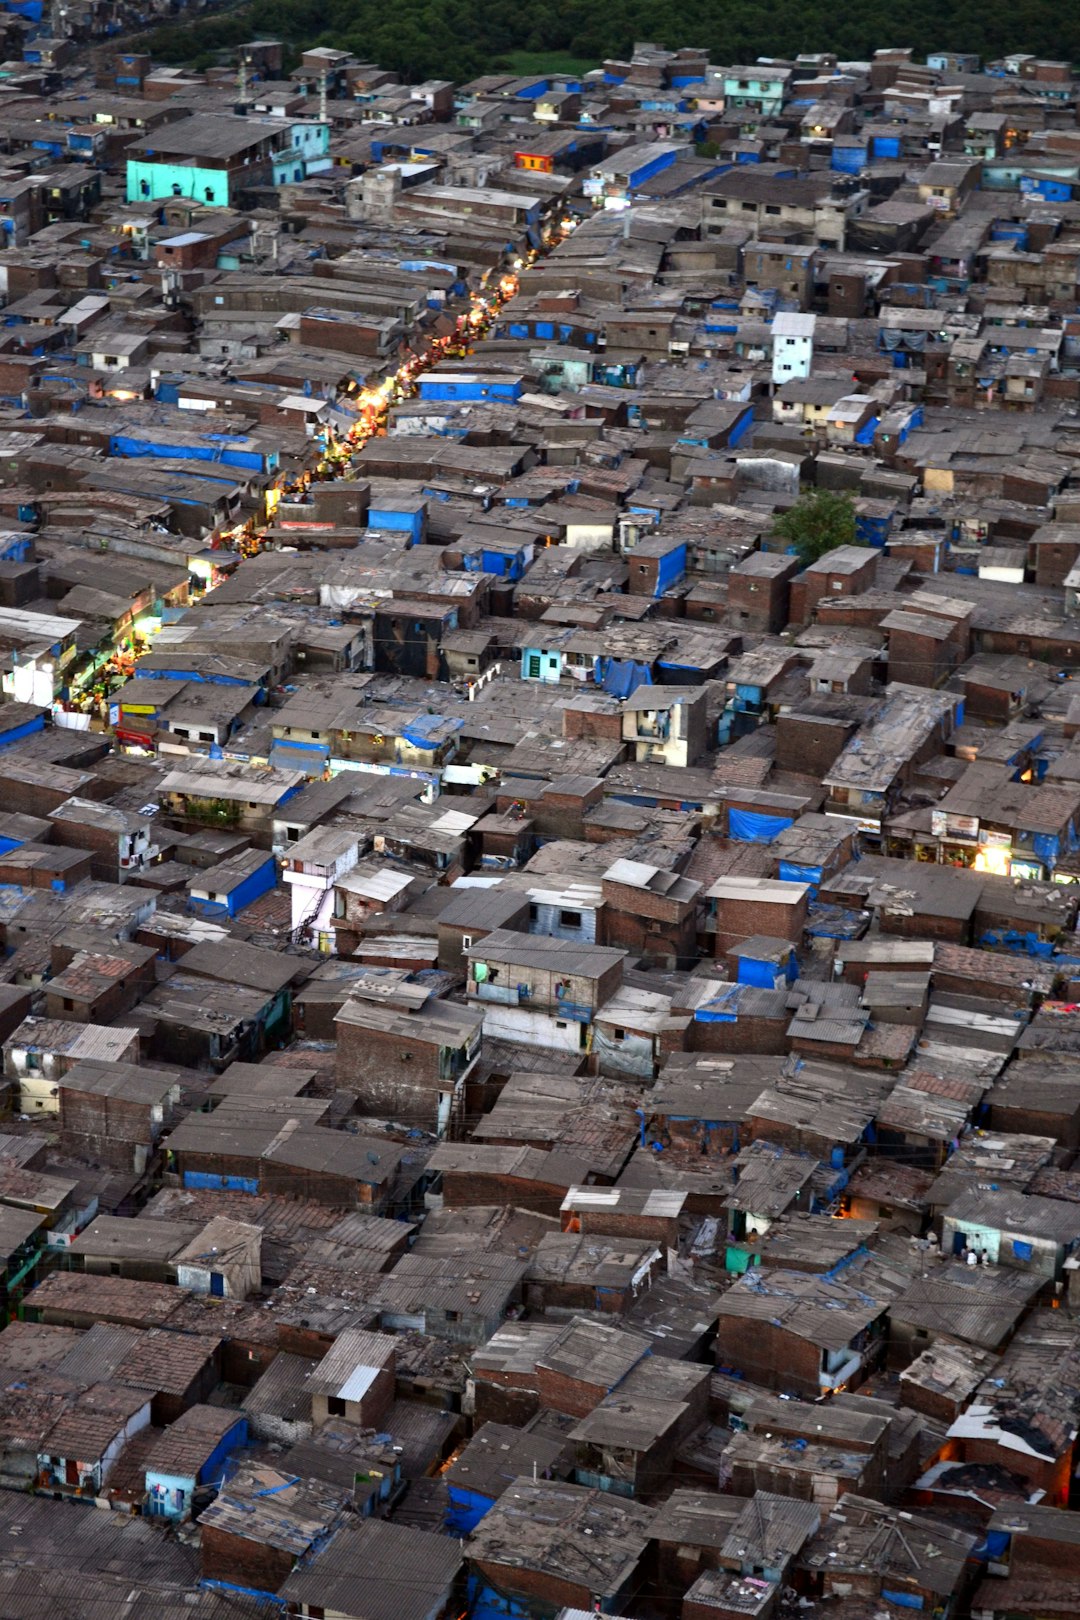 Mumbai slums